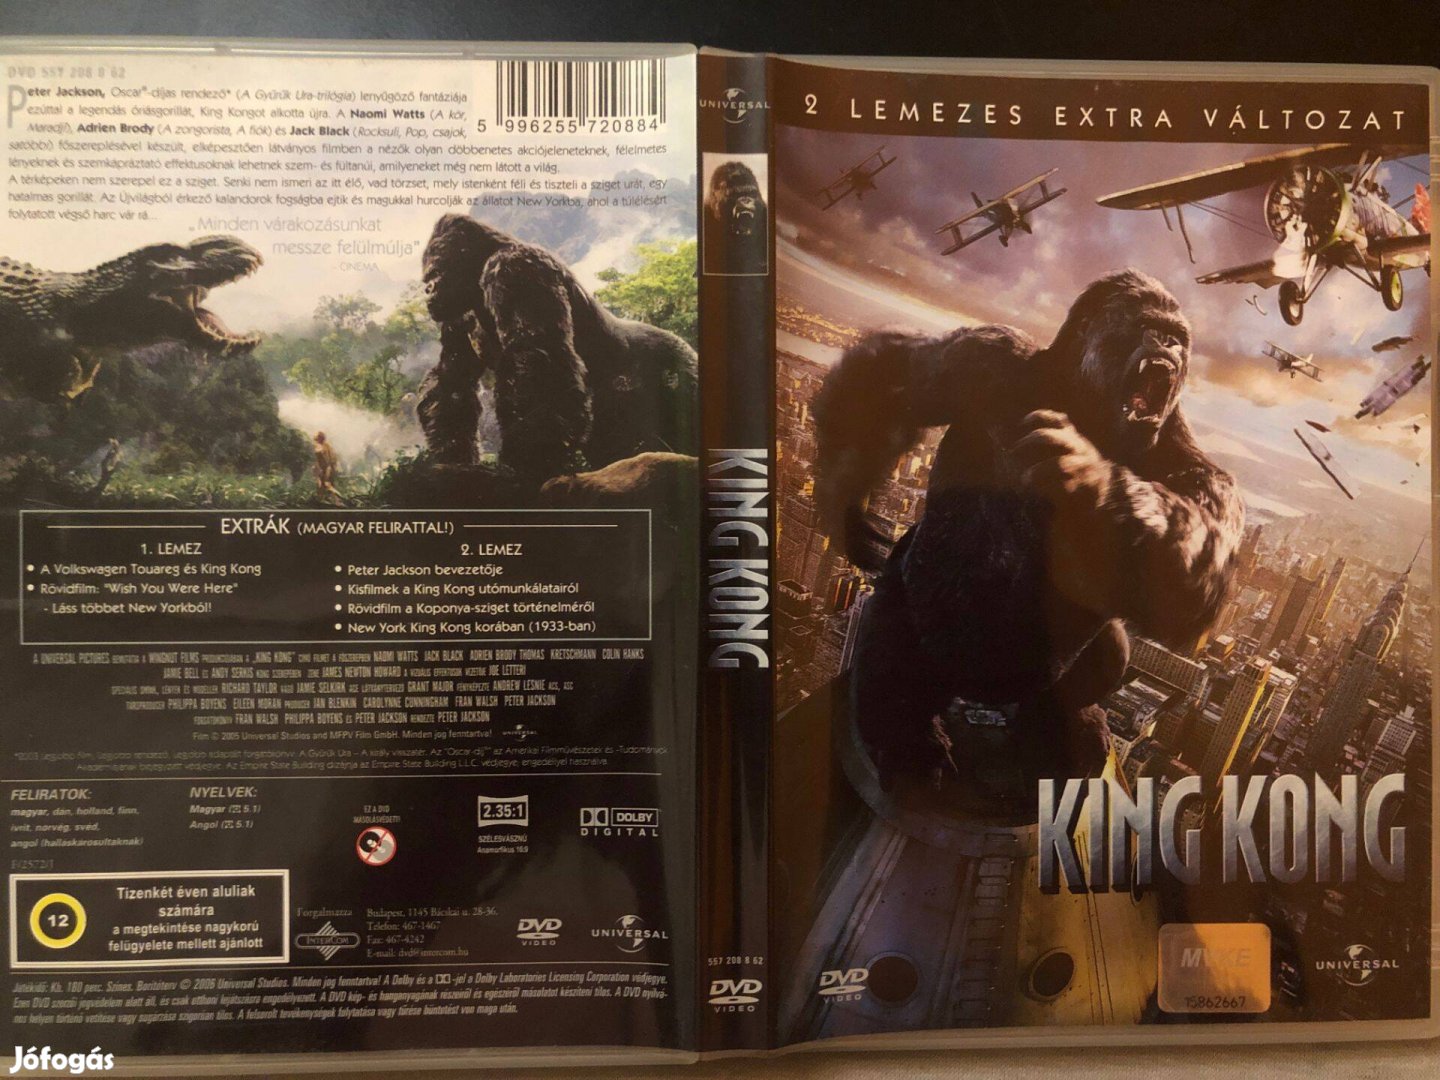 King Kong DVD (karcmentes, duplalemezes extra változat, 2005)